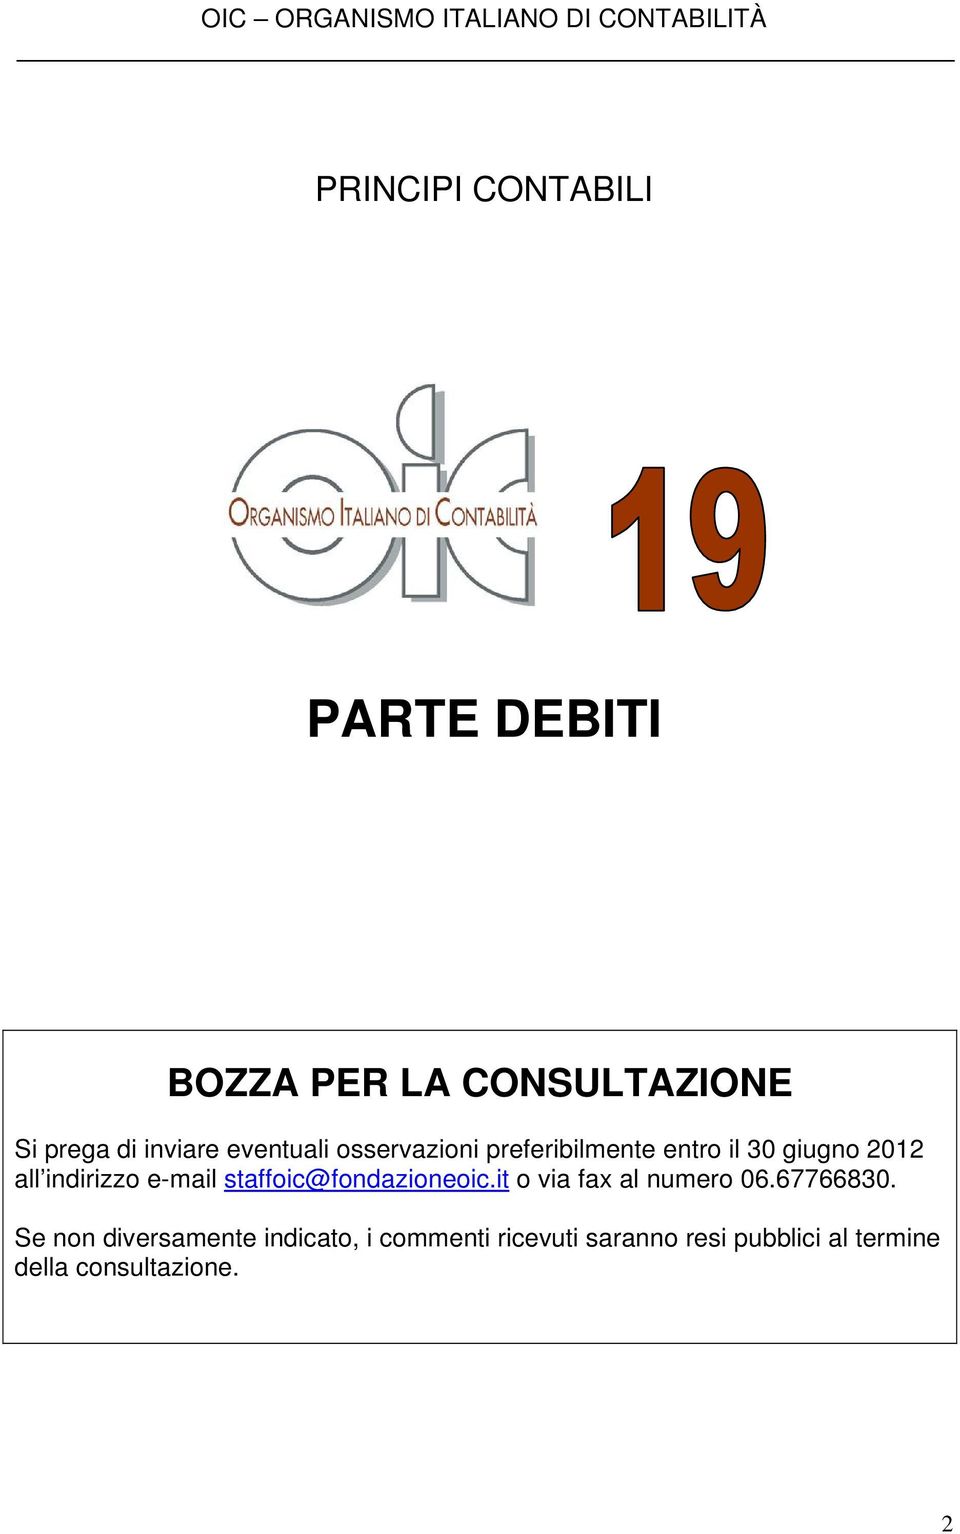 2012 all indirizzo e-mail staffoic@fondazioneoic.it o via fax al numero 06.67766830.